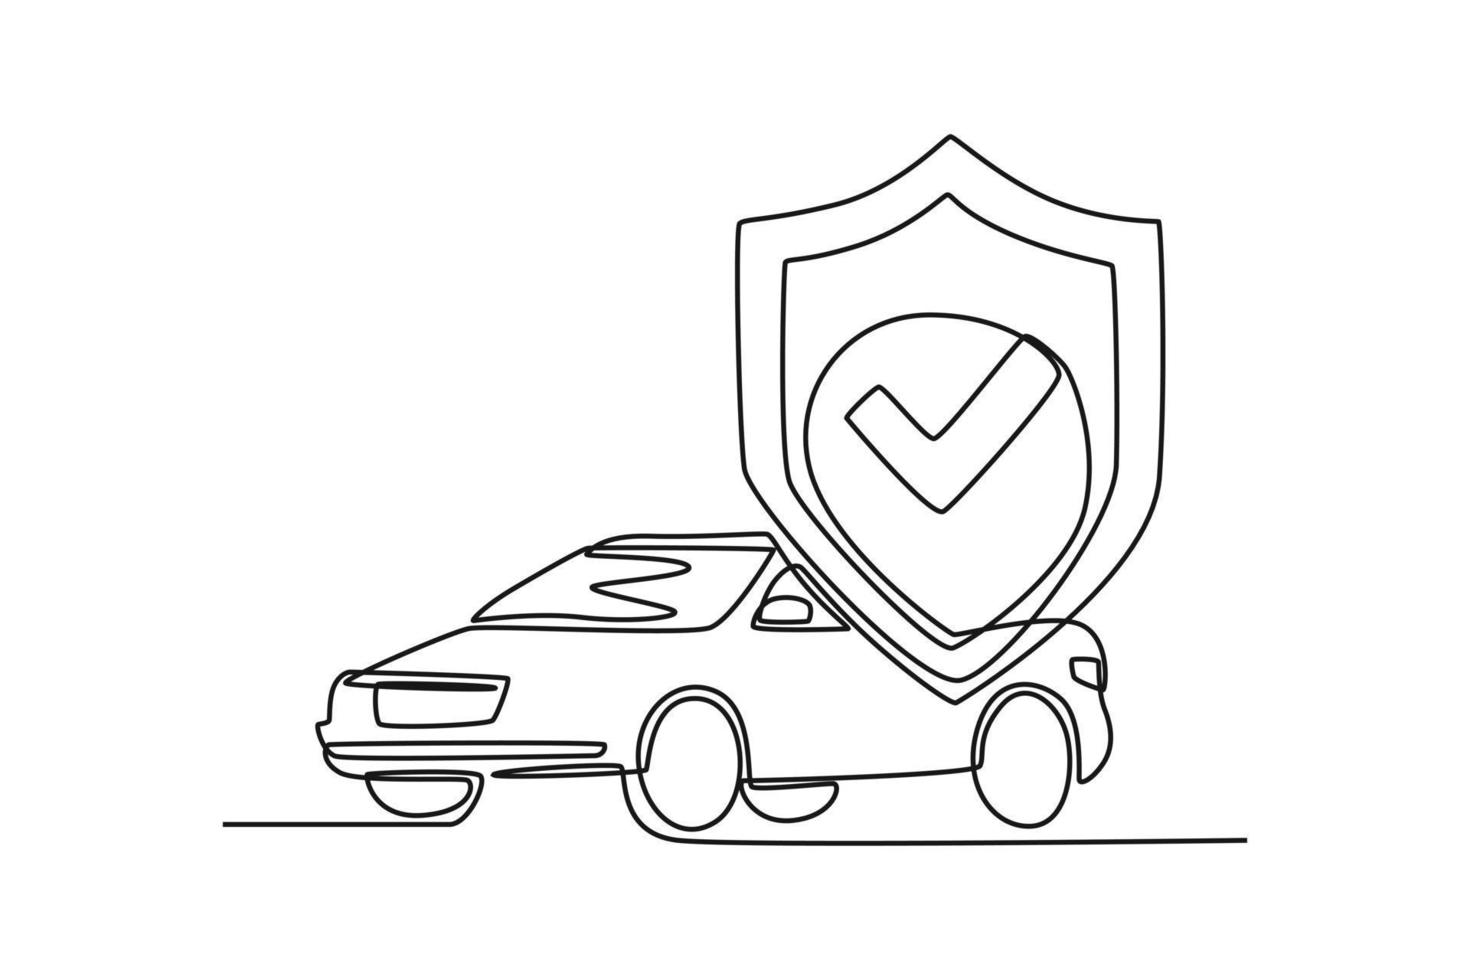 doorlopend een lijn tekening de auto heeft verzekering. verzekering concept single lijn trekt ontwerp grafisch vector illustratie